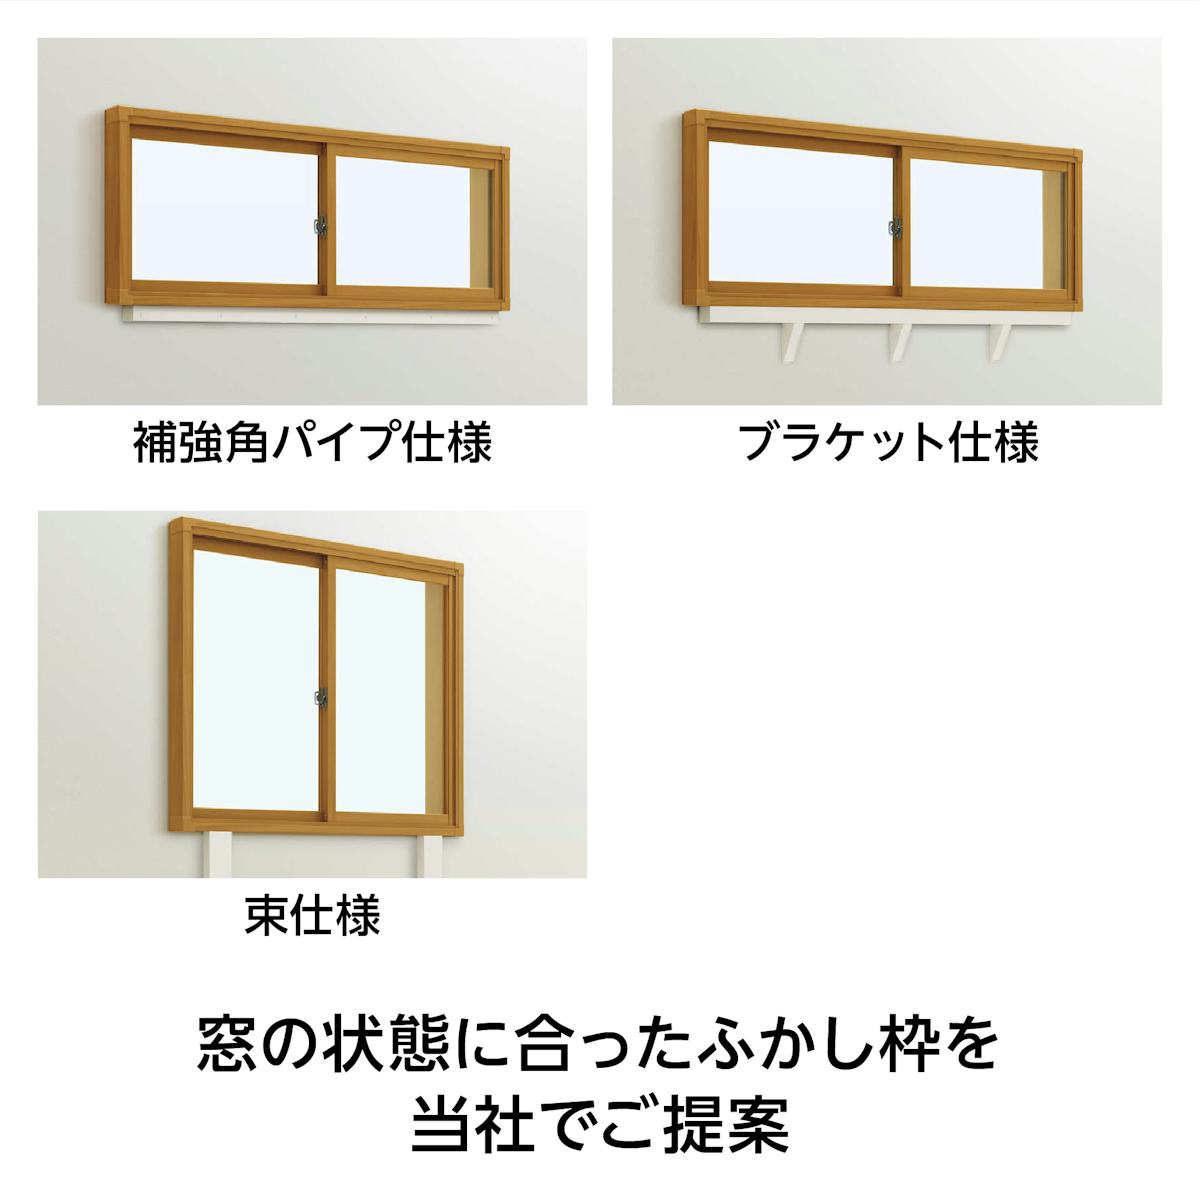 YKK APの内窓「マドリモ プラマードU」引き違い窓(4枚建て) - ふかし枠補強材も販売